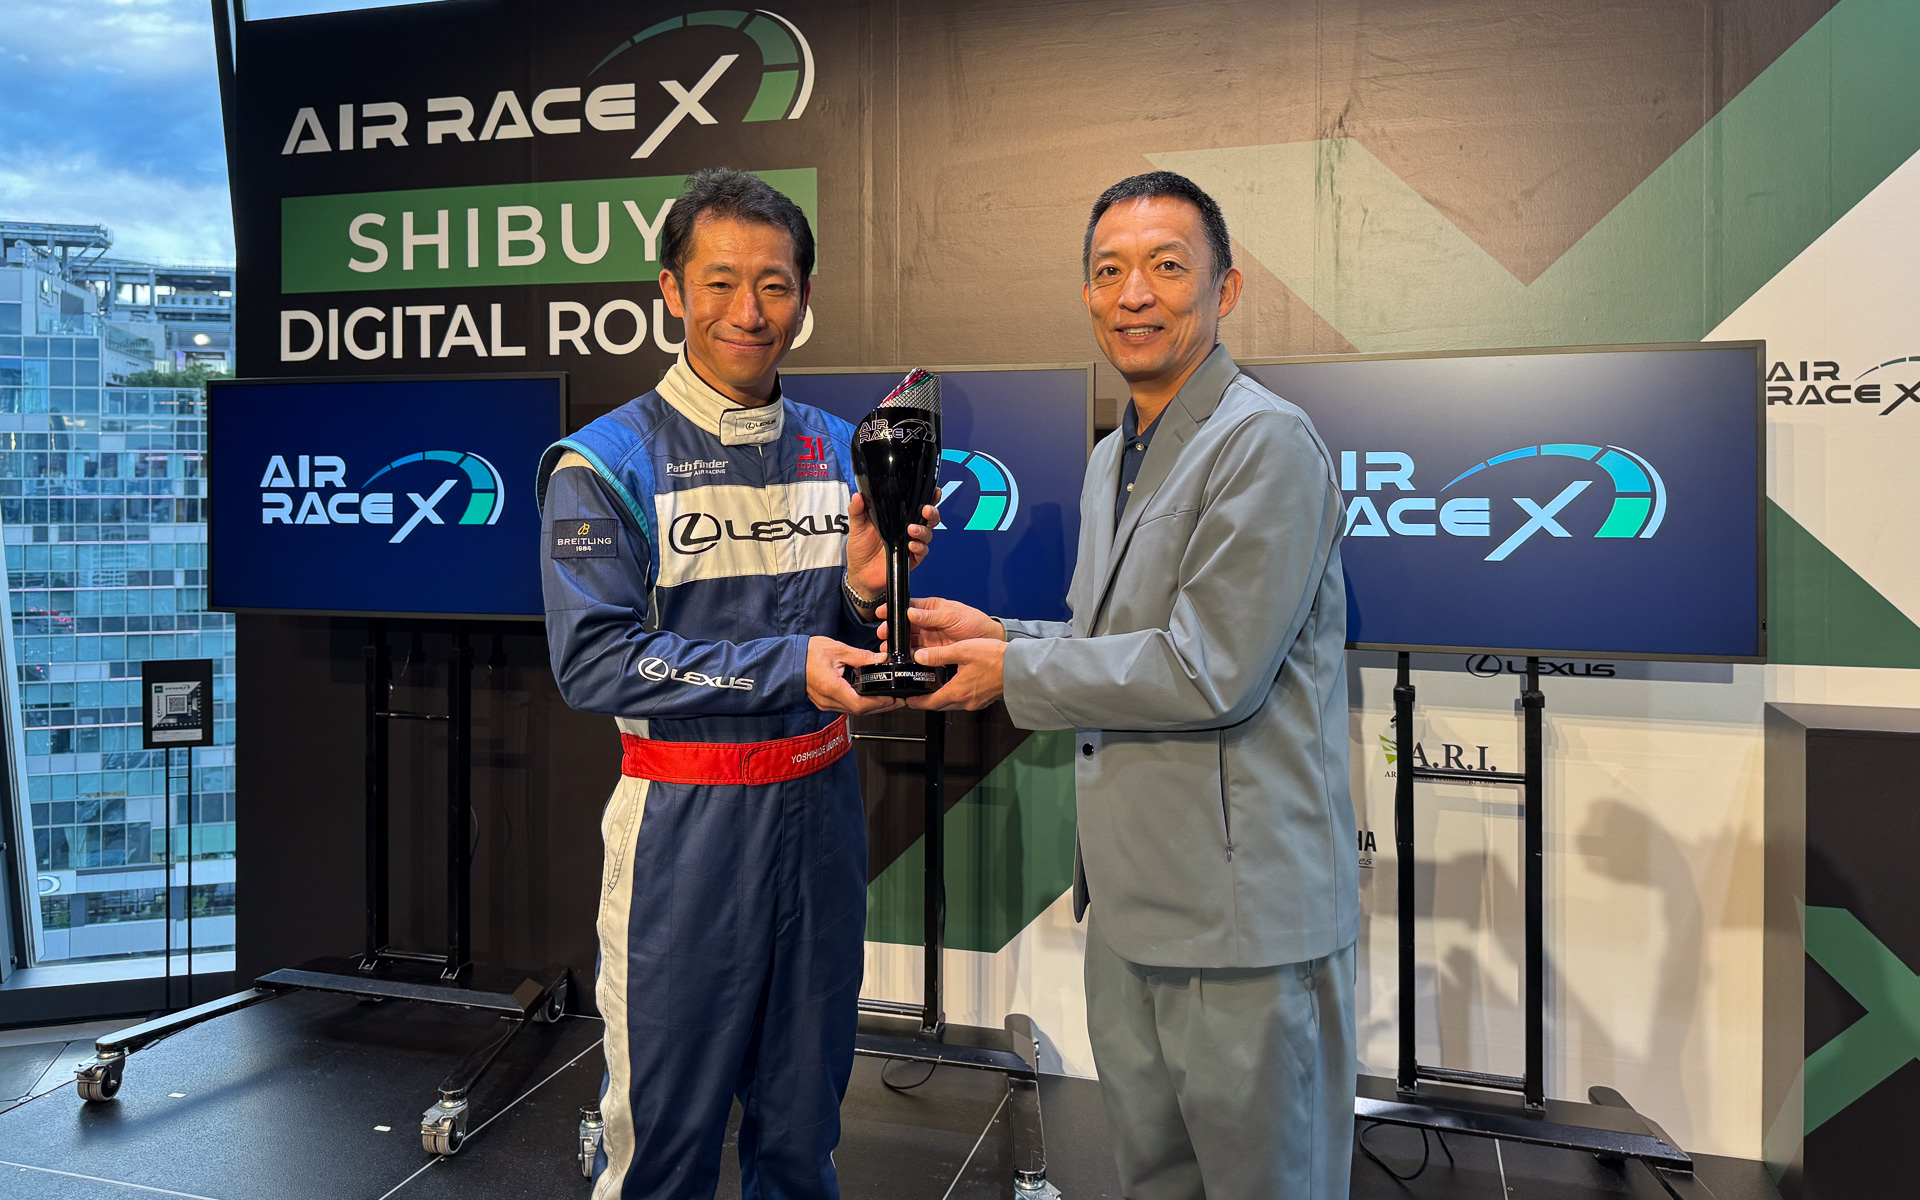 エアレースX、室屋義秀選手が渋谷の決勝戦で優勝 61秒857の最速フライト - Car Watch